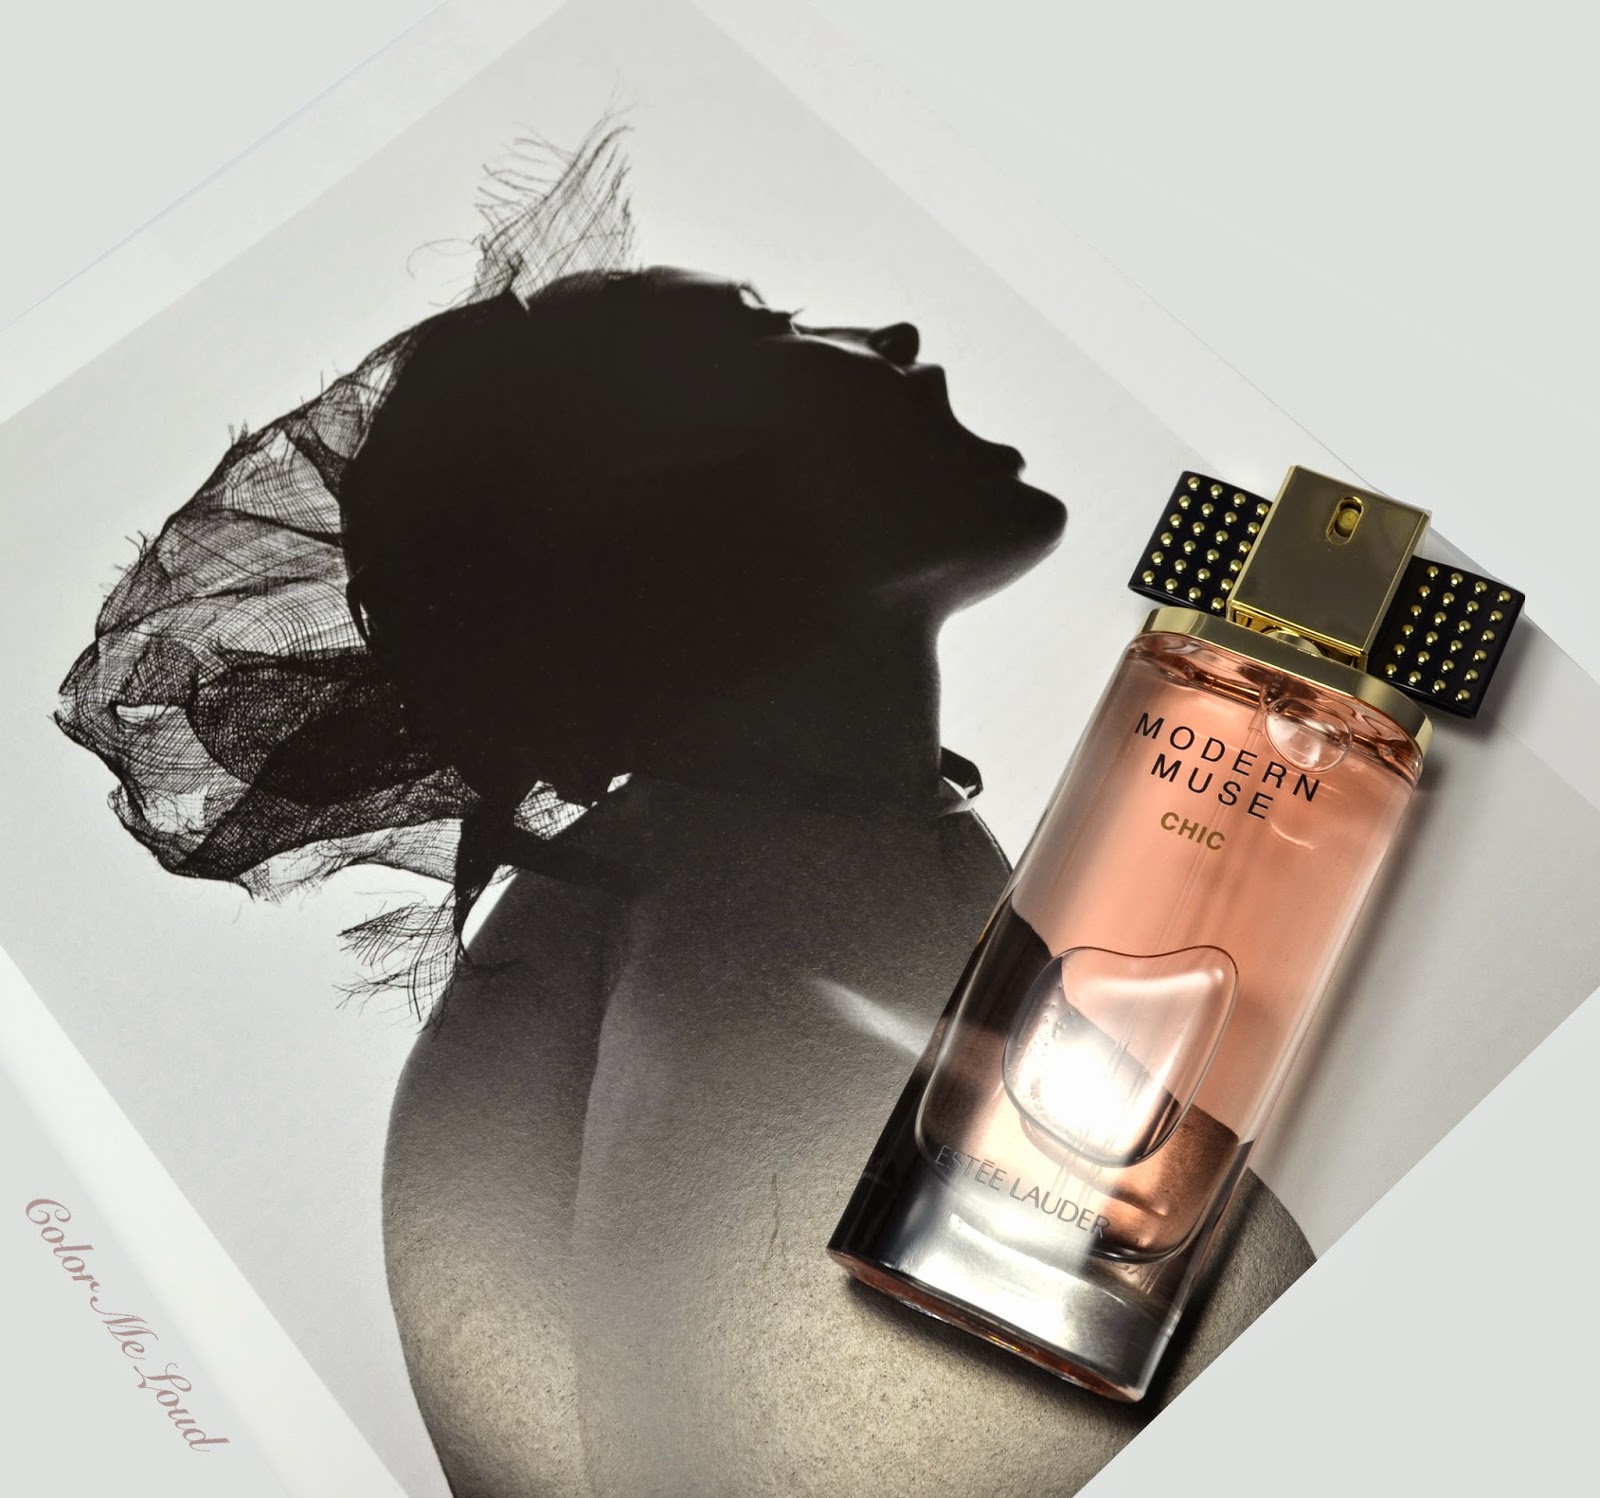 Estée Lauder Modern Muse Chic Eau de Parfum, Photos & Review 